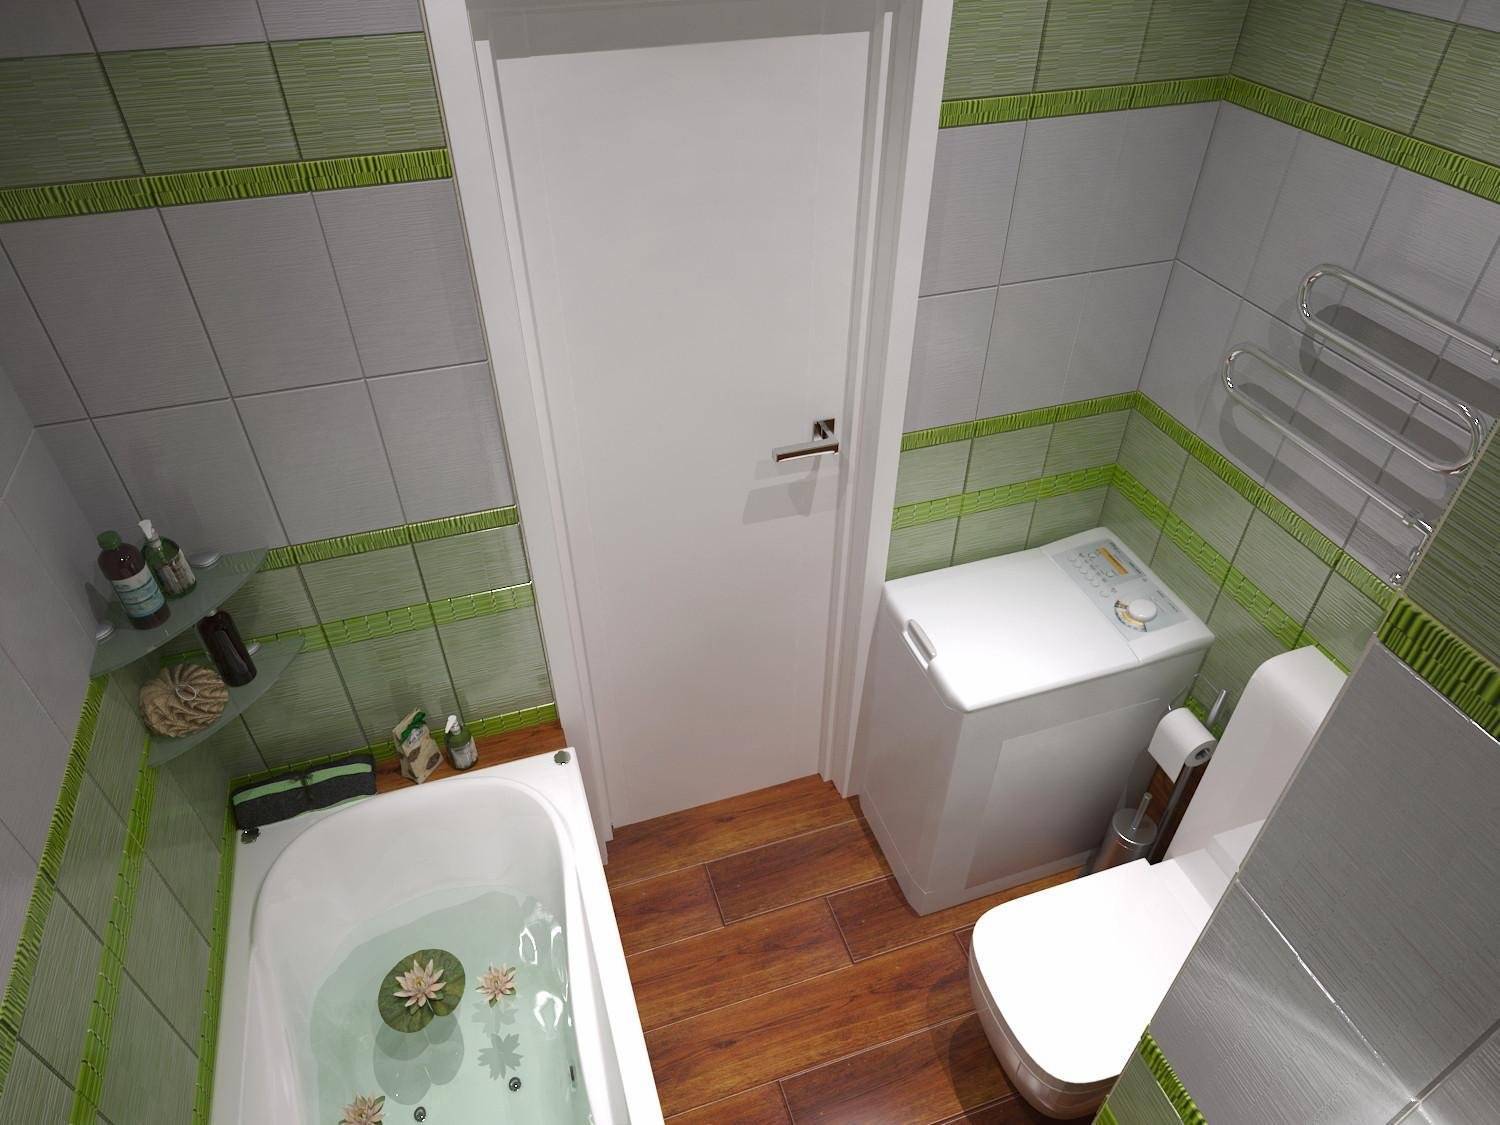 Совмещенный санузел с ванной, туалетом: современный дизайн 2020-2021 года, плитка